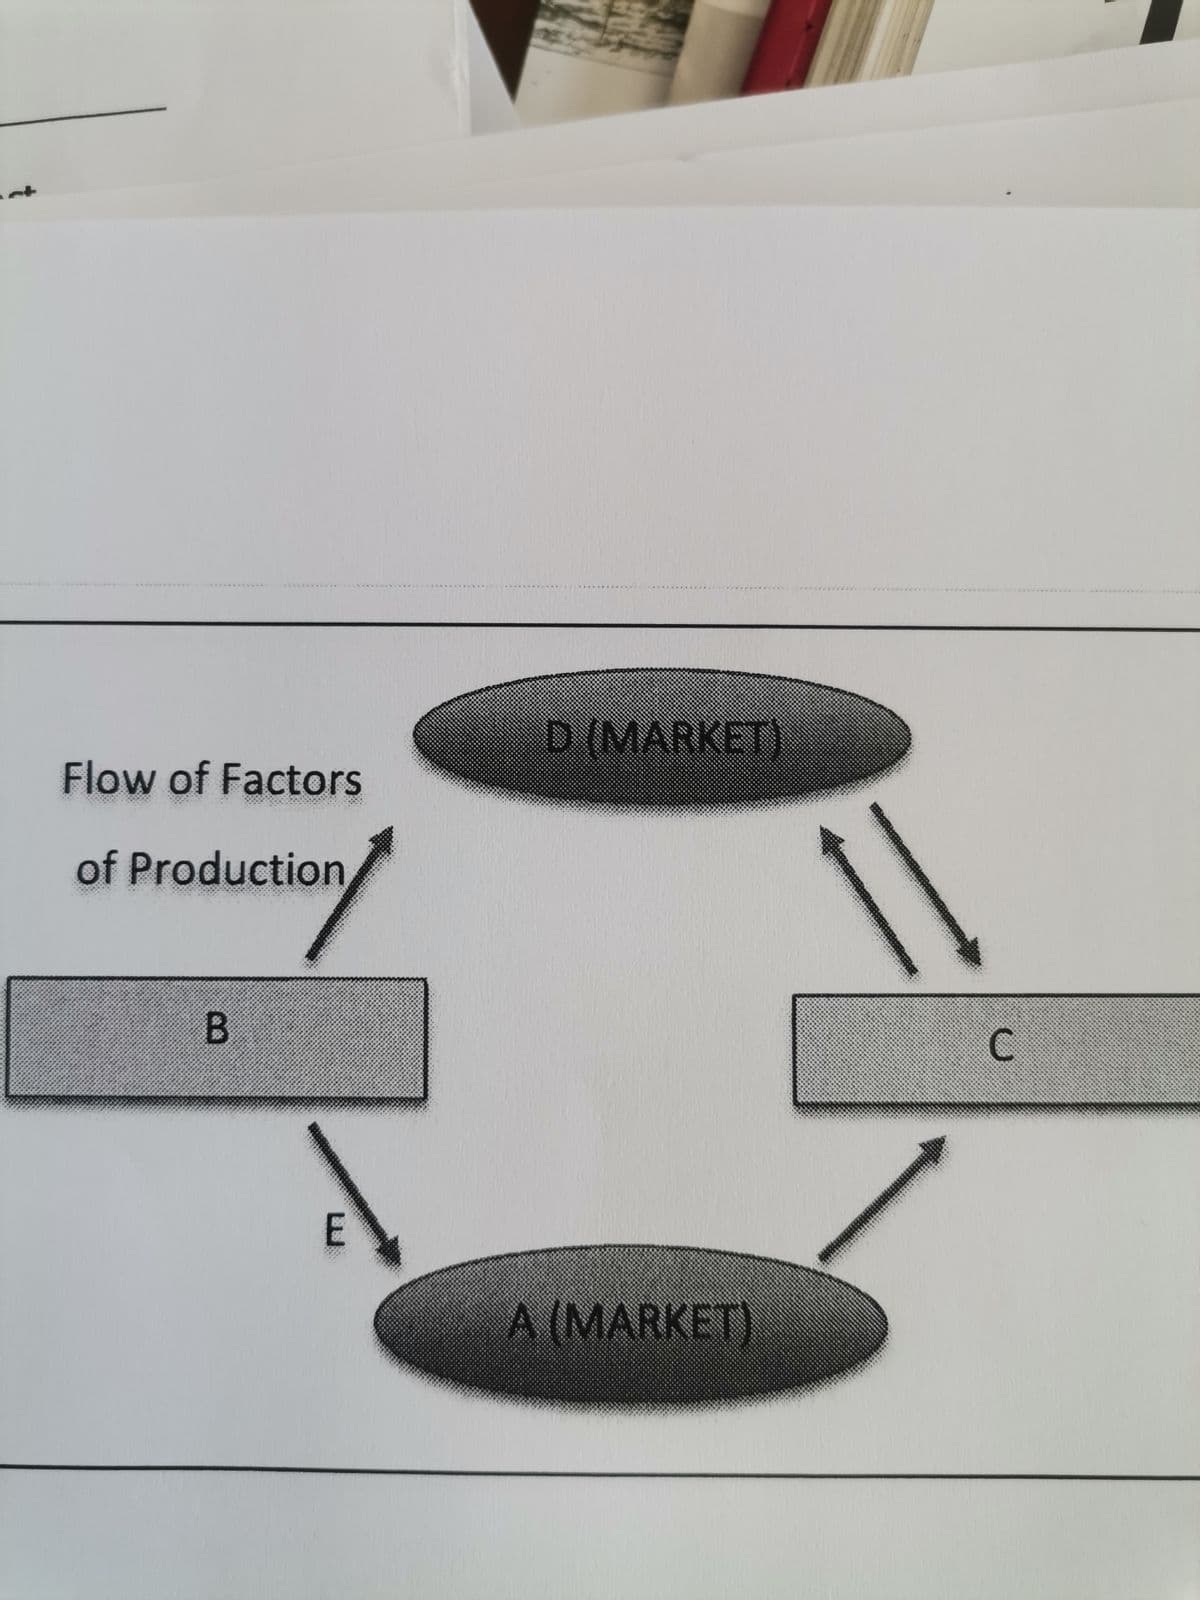 D (MARKET)
Flow of Factors
of Production
C.
A (MARKET)
